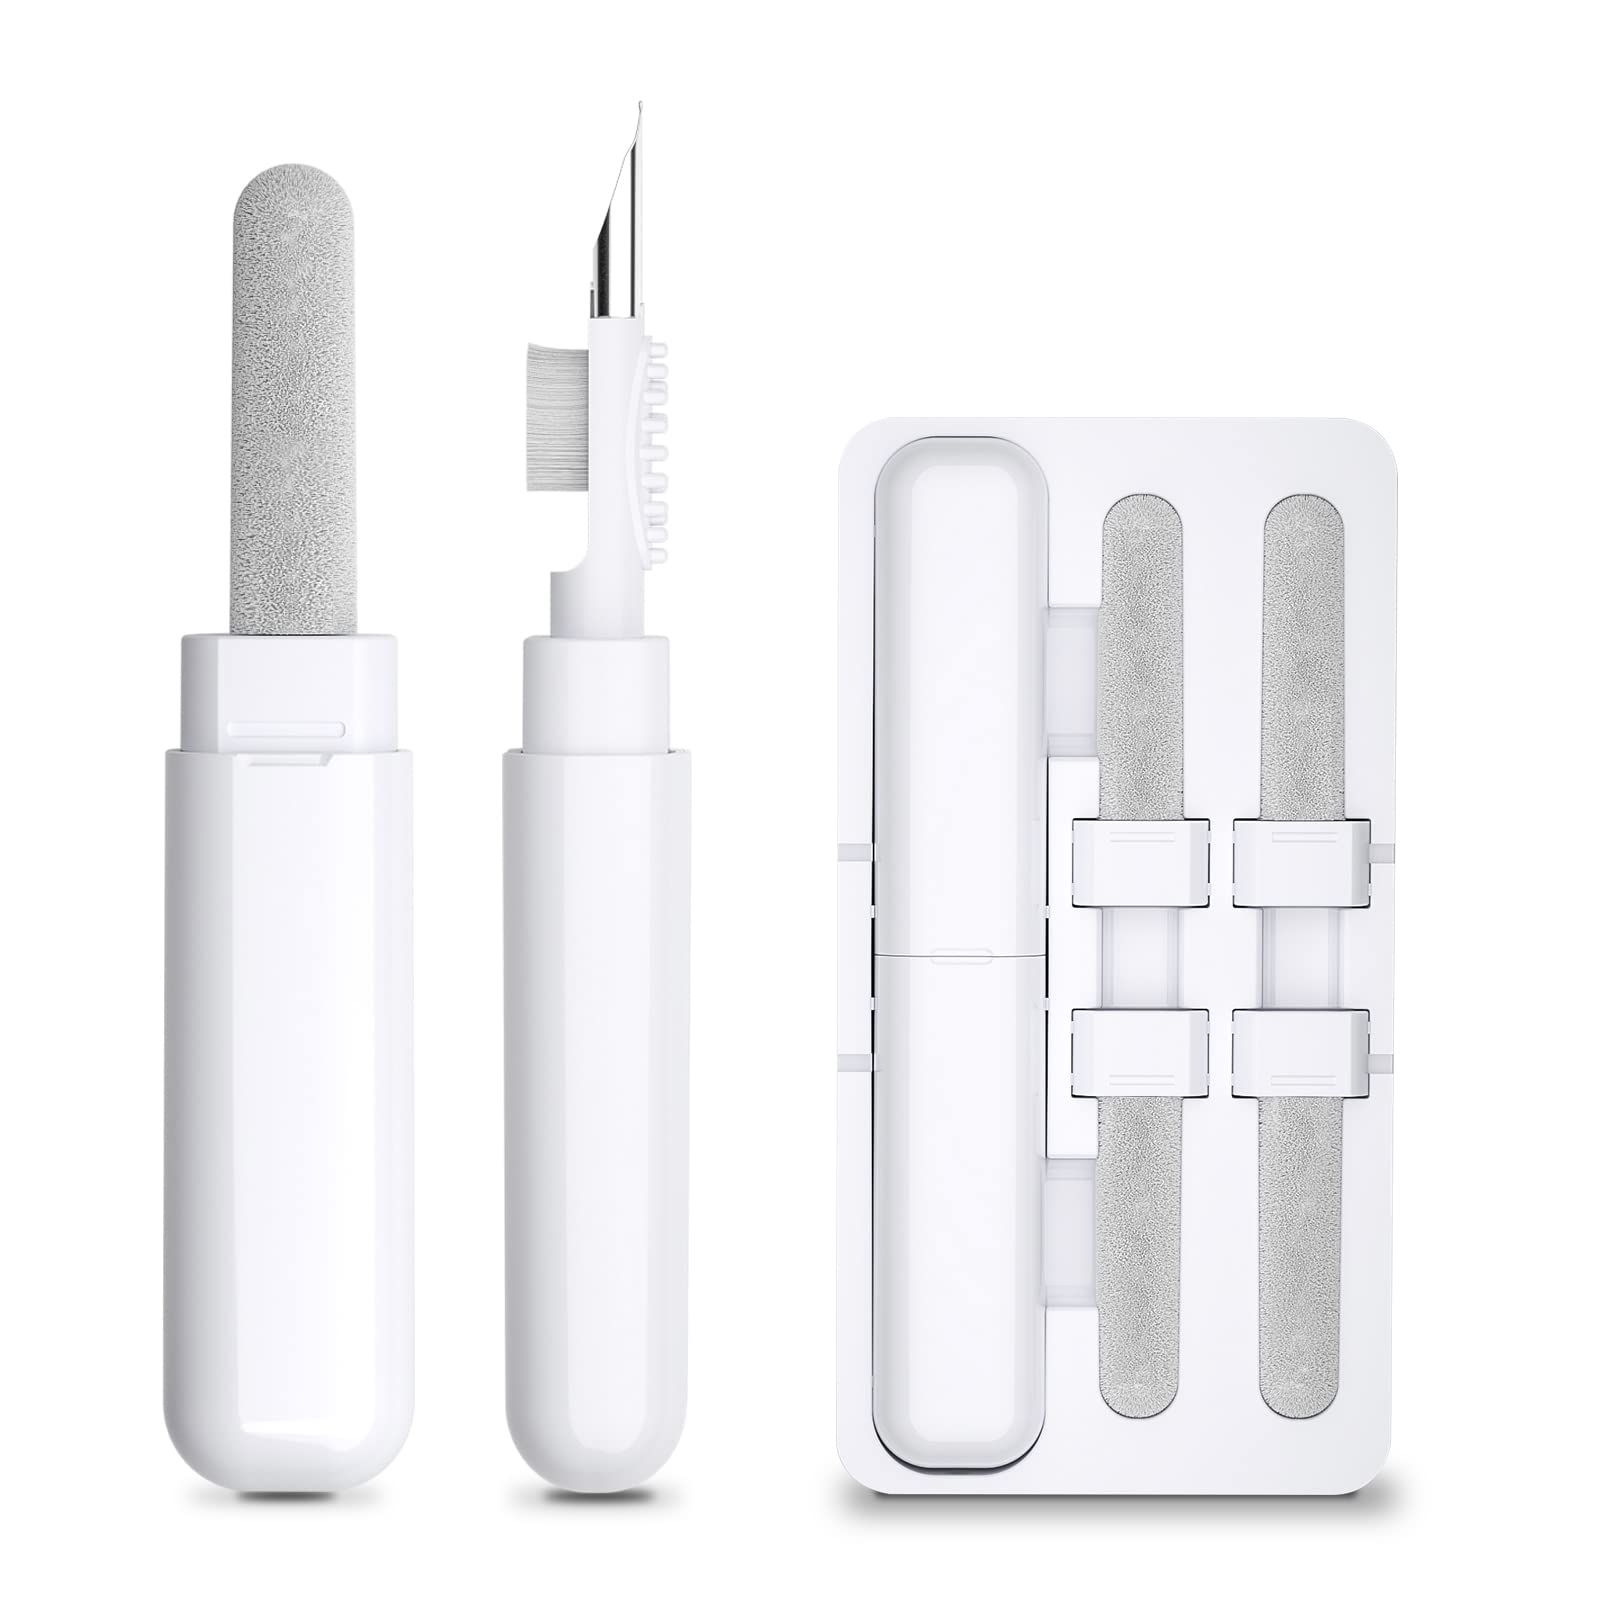 Airpod Cleaner Kit, kit 5 Herramientas de limpieza multifunción para Airpods,  Brush Pen Shape Útil para